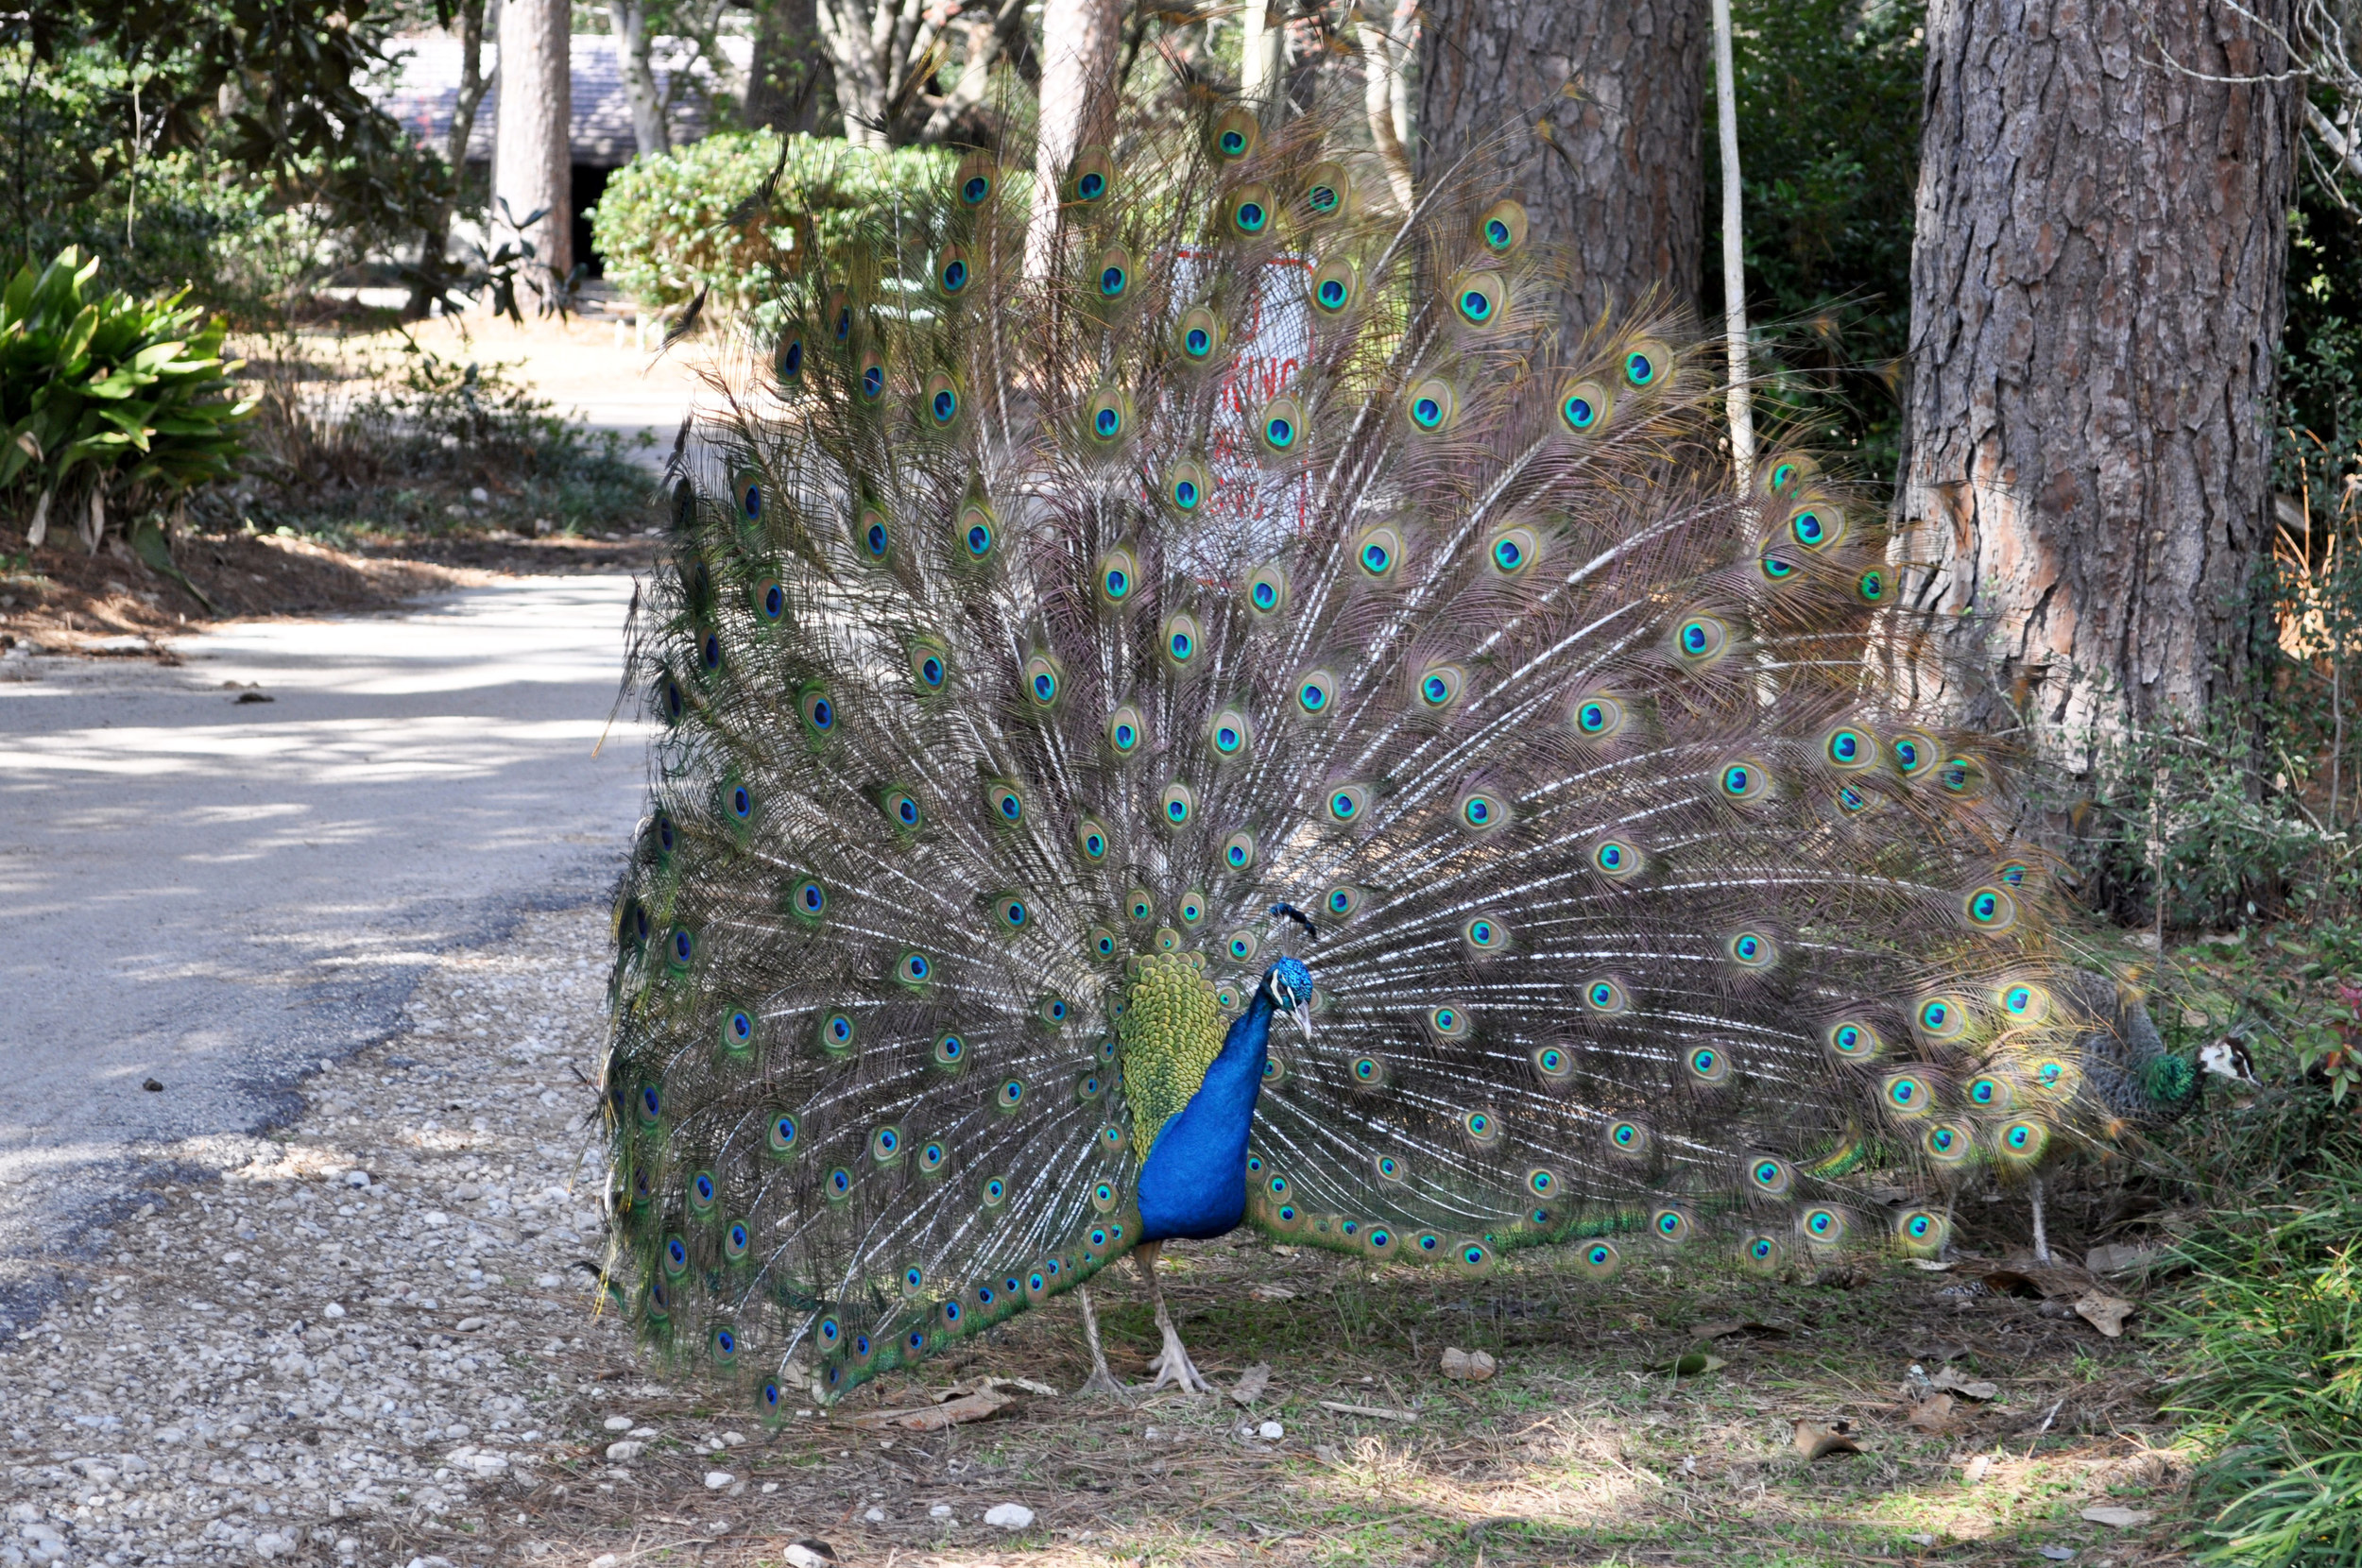 Wildlife-(Peacock)1.jpg